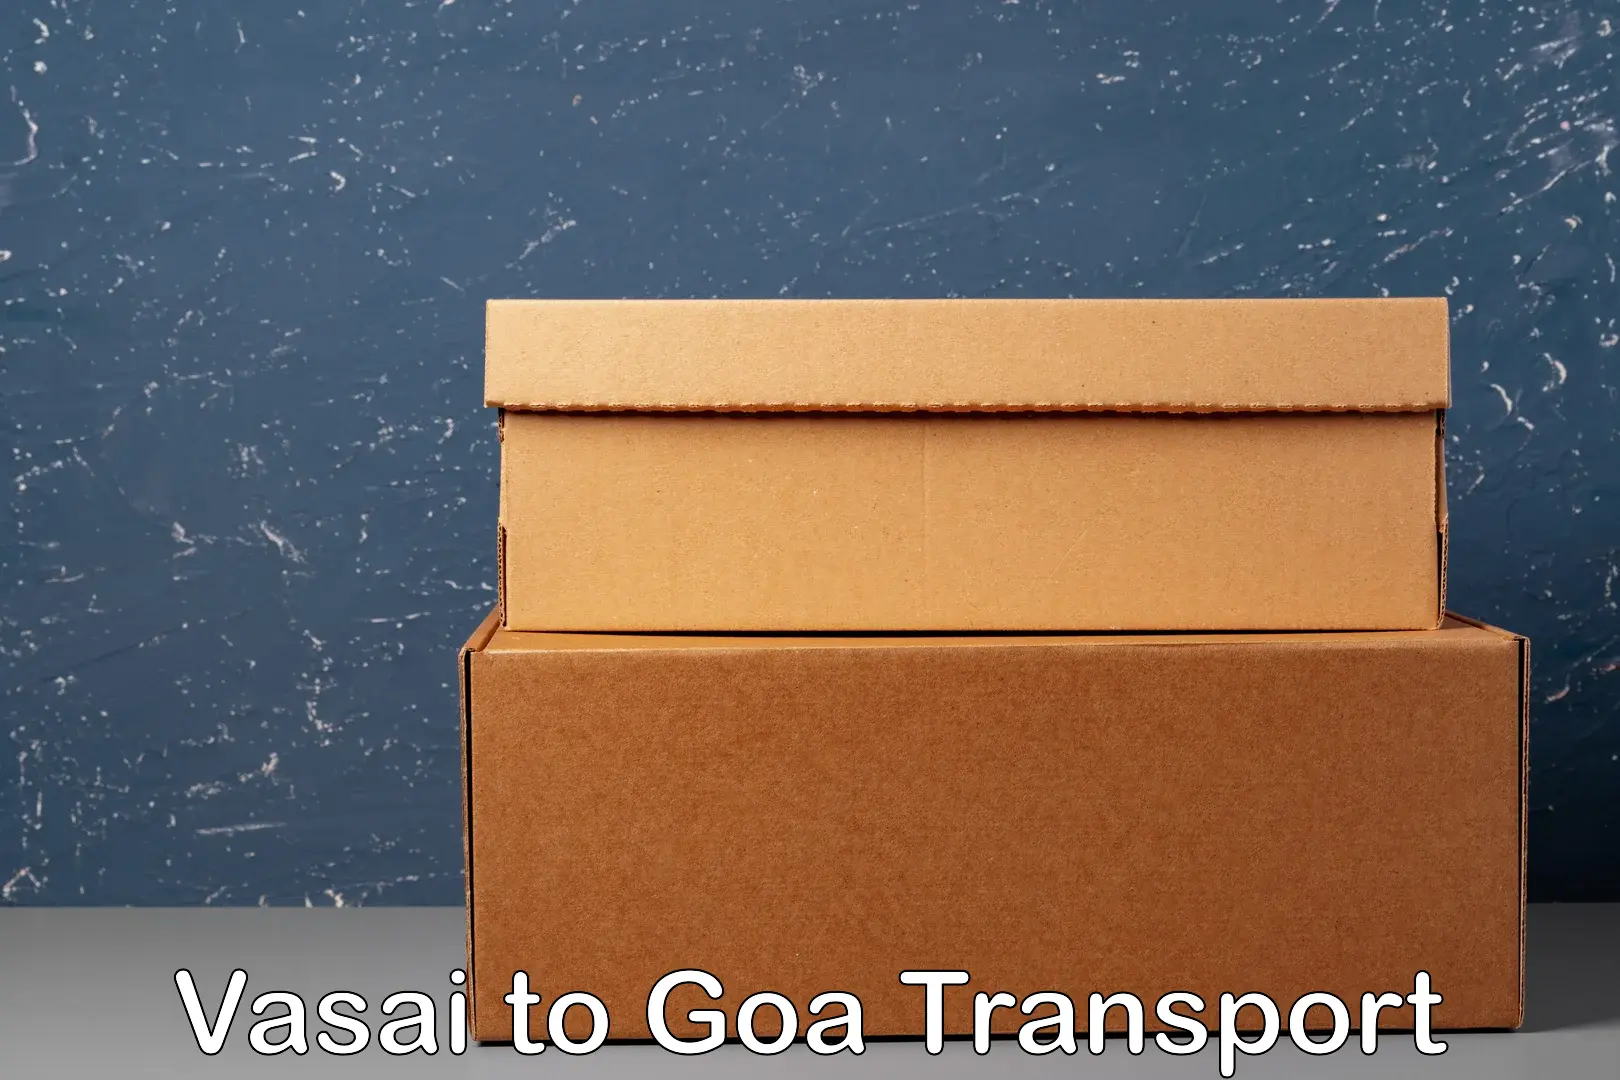 Transport services Vasai to Goa